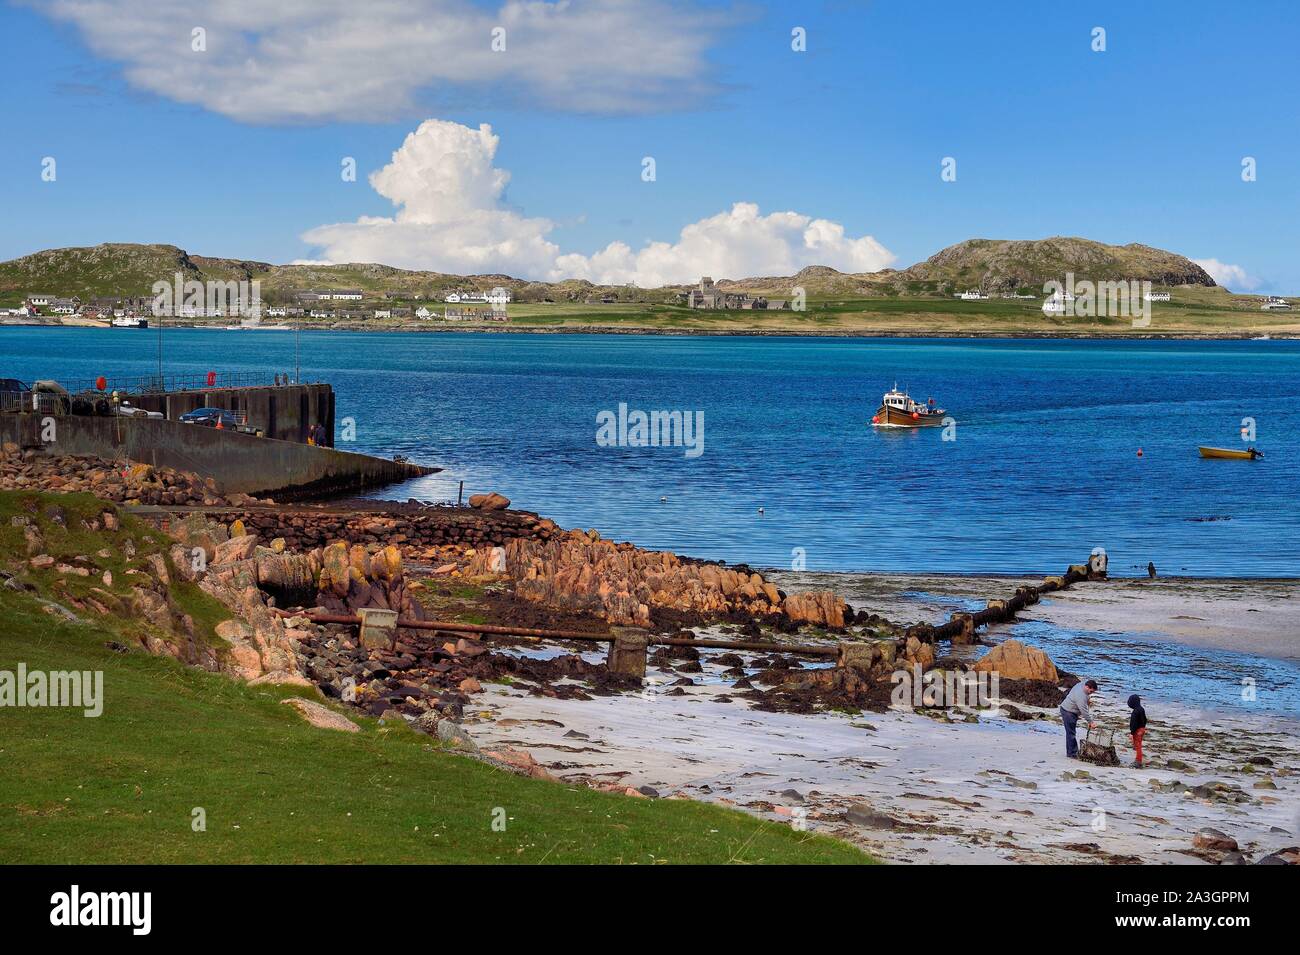 Vereinigtes Königreich, Schottland, Highland, Innere Hebriden, die Ross von Mull im äußersten Südwesten der Insel Mull, Fionnphort und gegenüber der Insel Iona Abbey am Meer Stockfoto